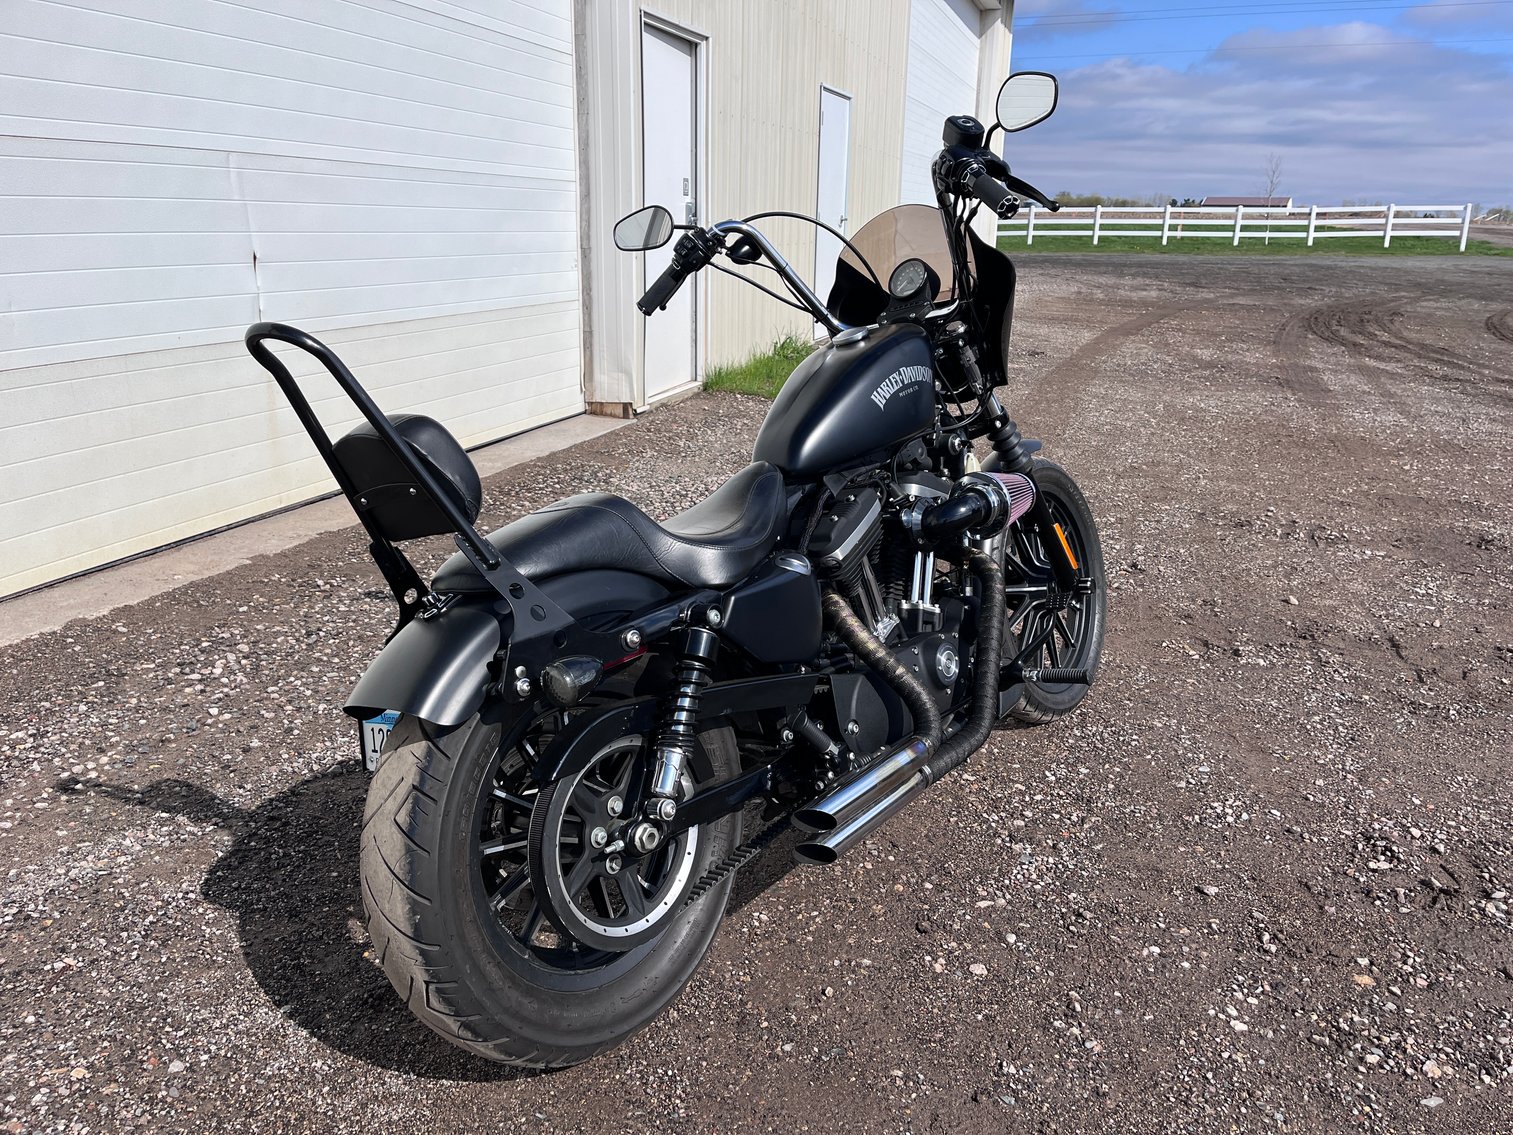 2014 Harley Davidson XL883N Sportster Motorcycle